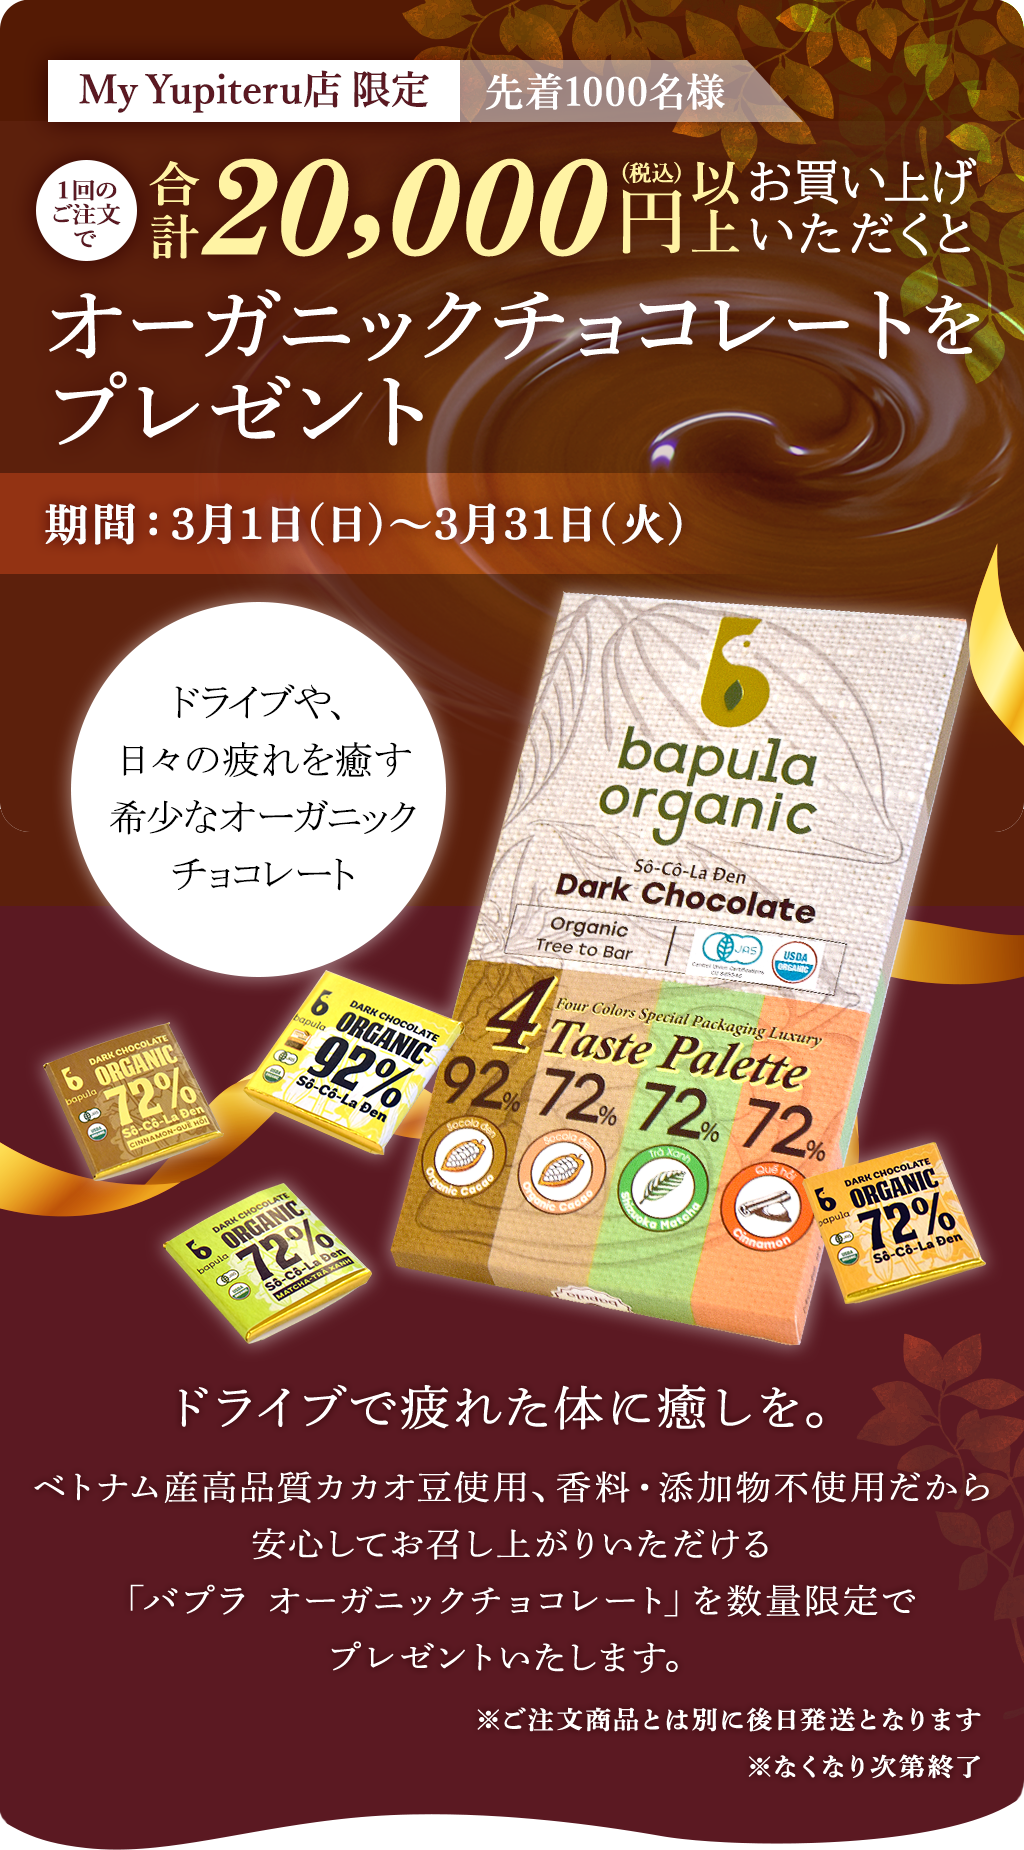 一回のご注文時に2万円お買い上げいただくとオーガニックチョコレートをプレゼント